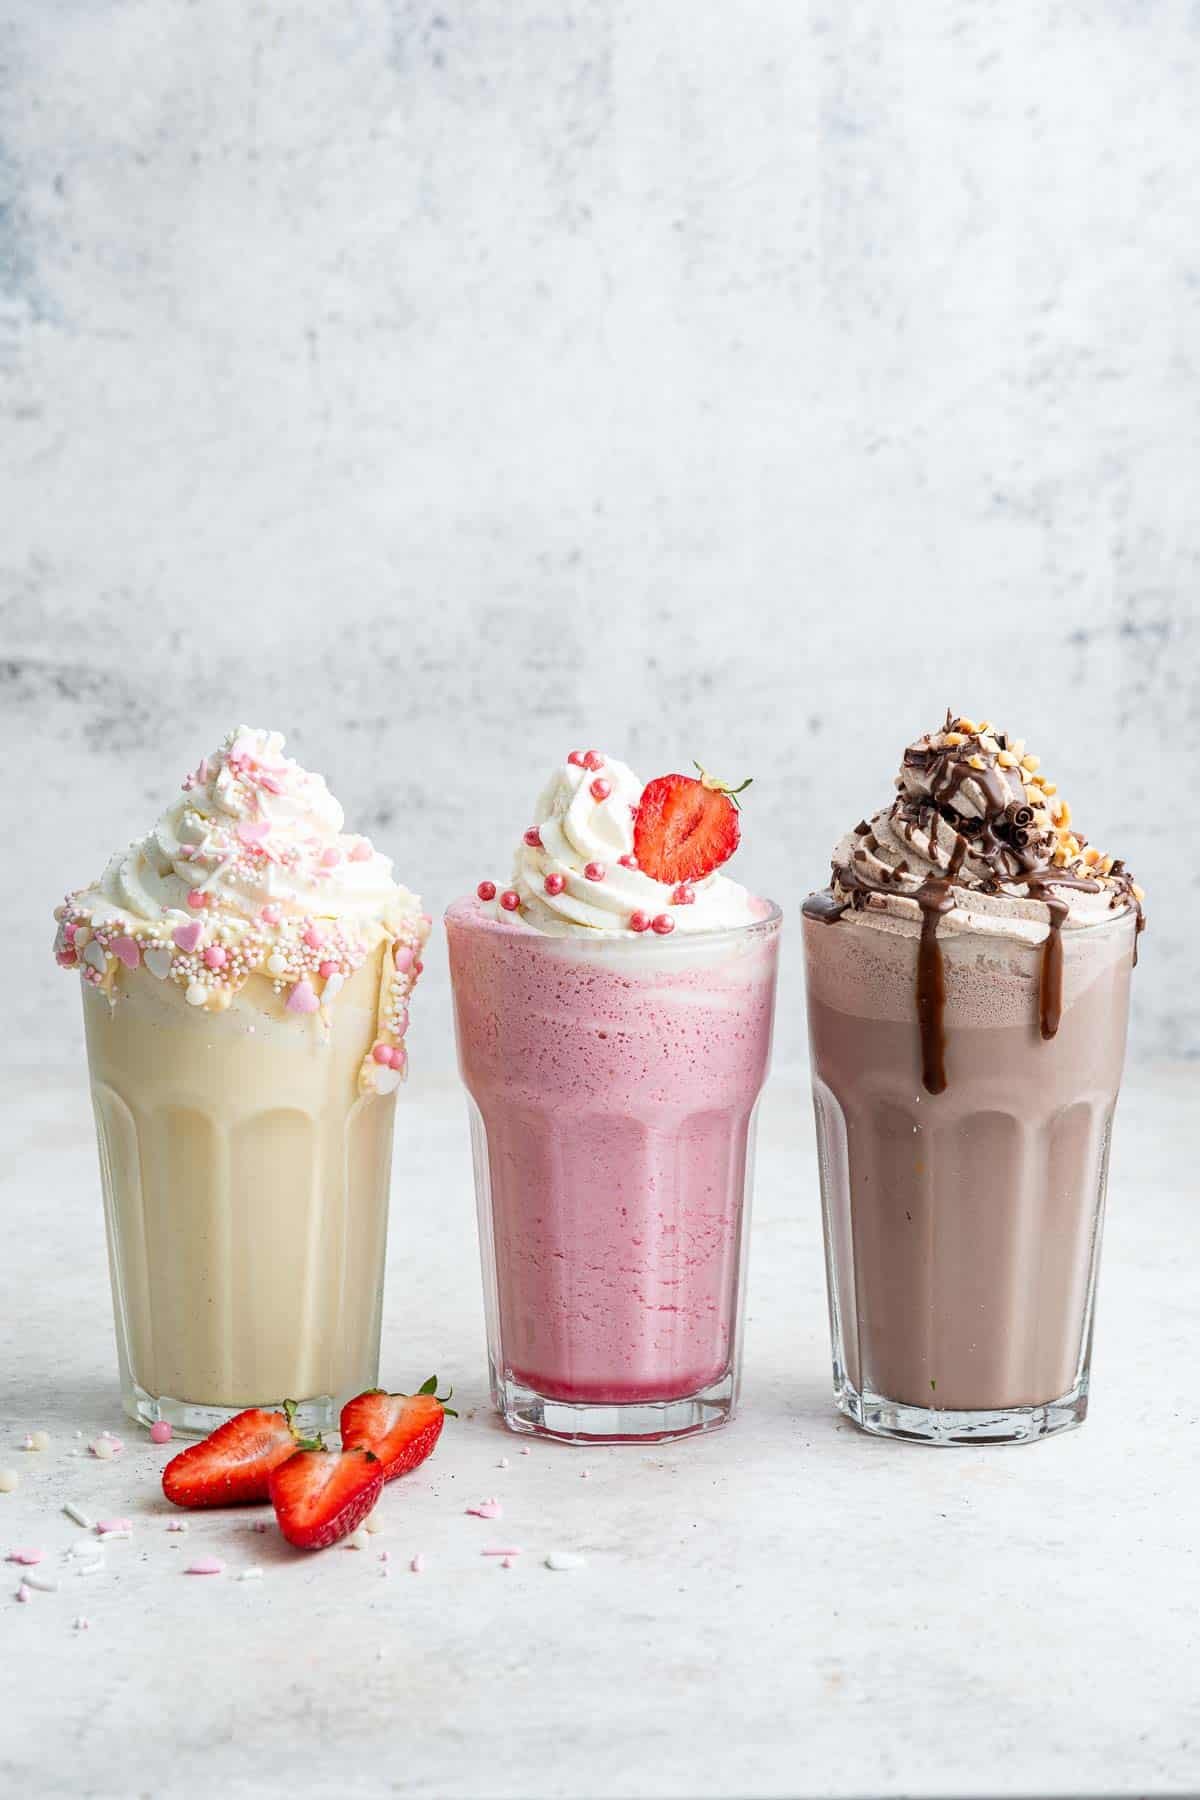 Vertikales Bild von 3 Milchshakes: Vanille, Erdbeere und Schokolade.